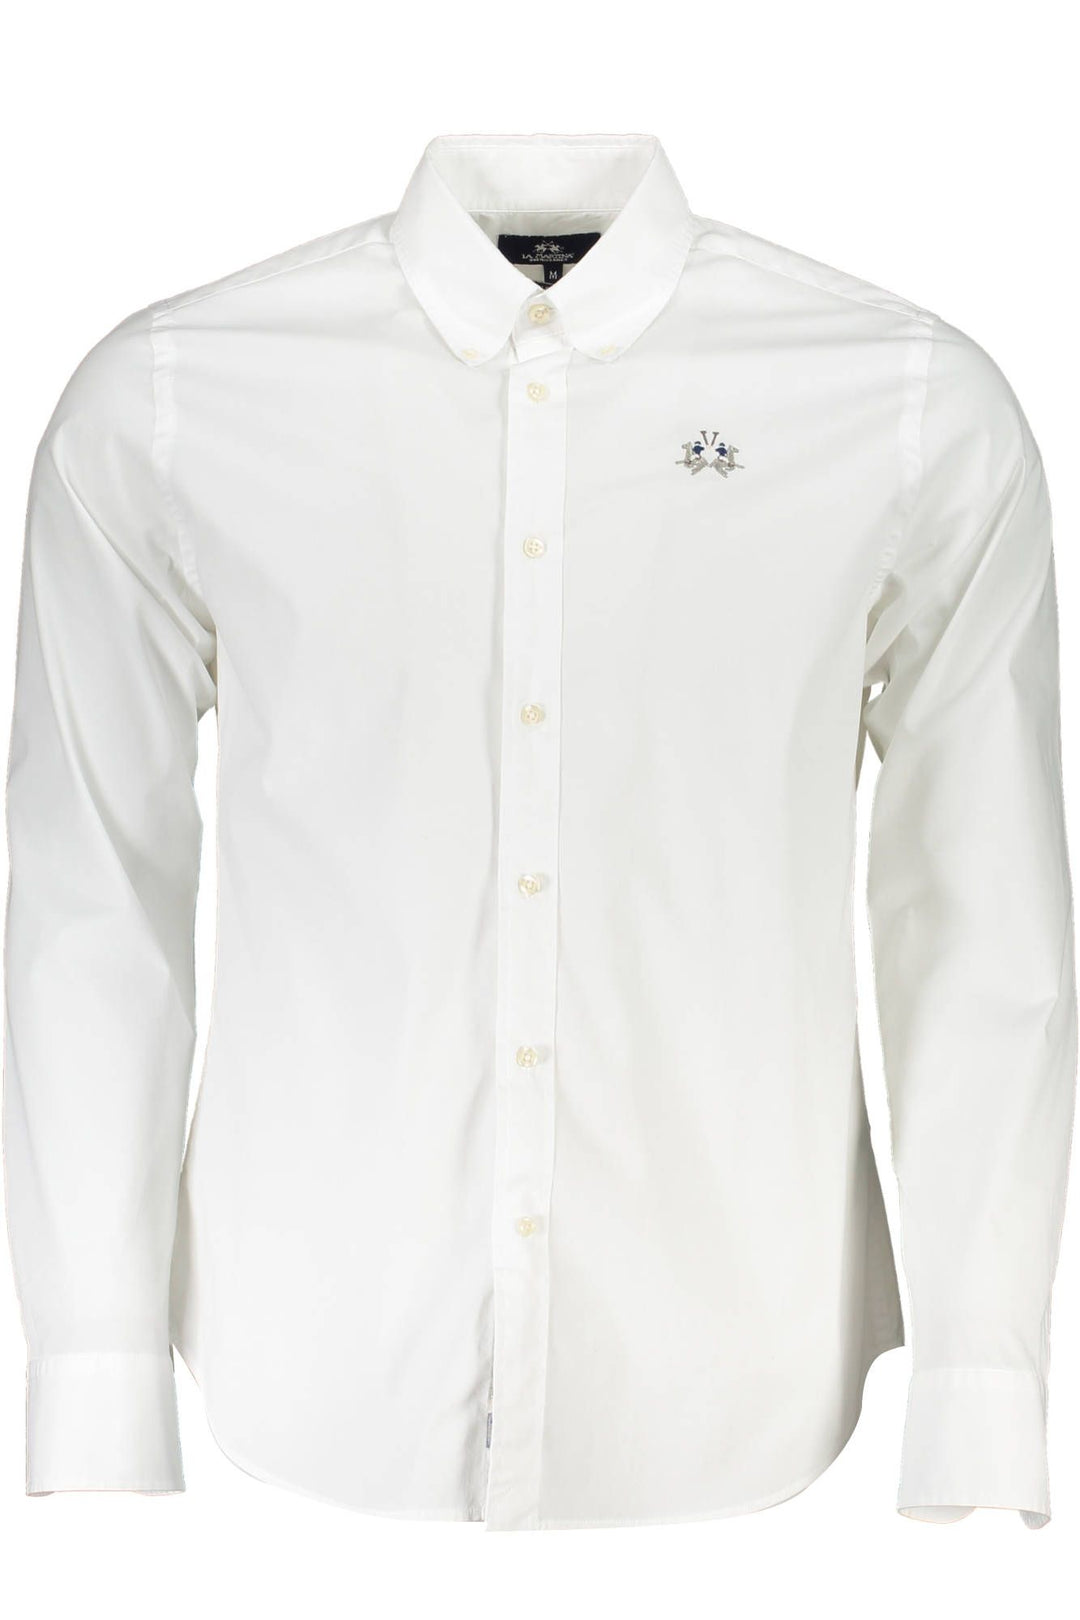 La Martina White Cotton Shirt